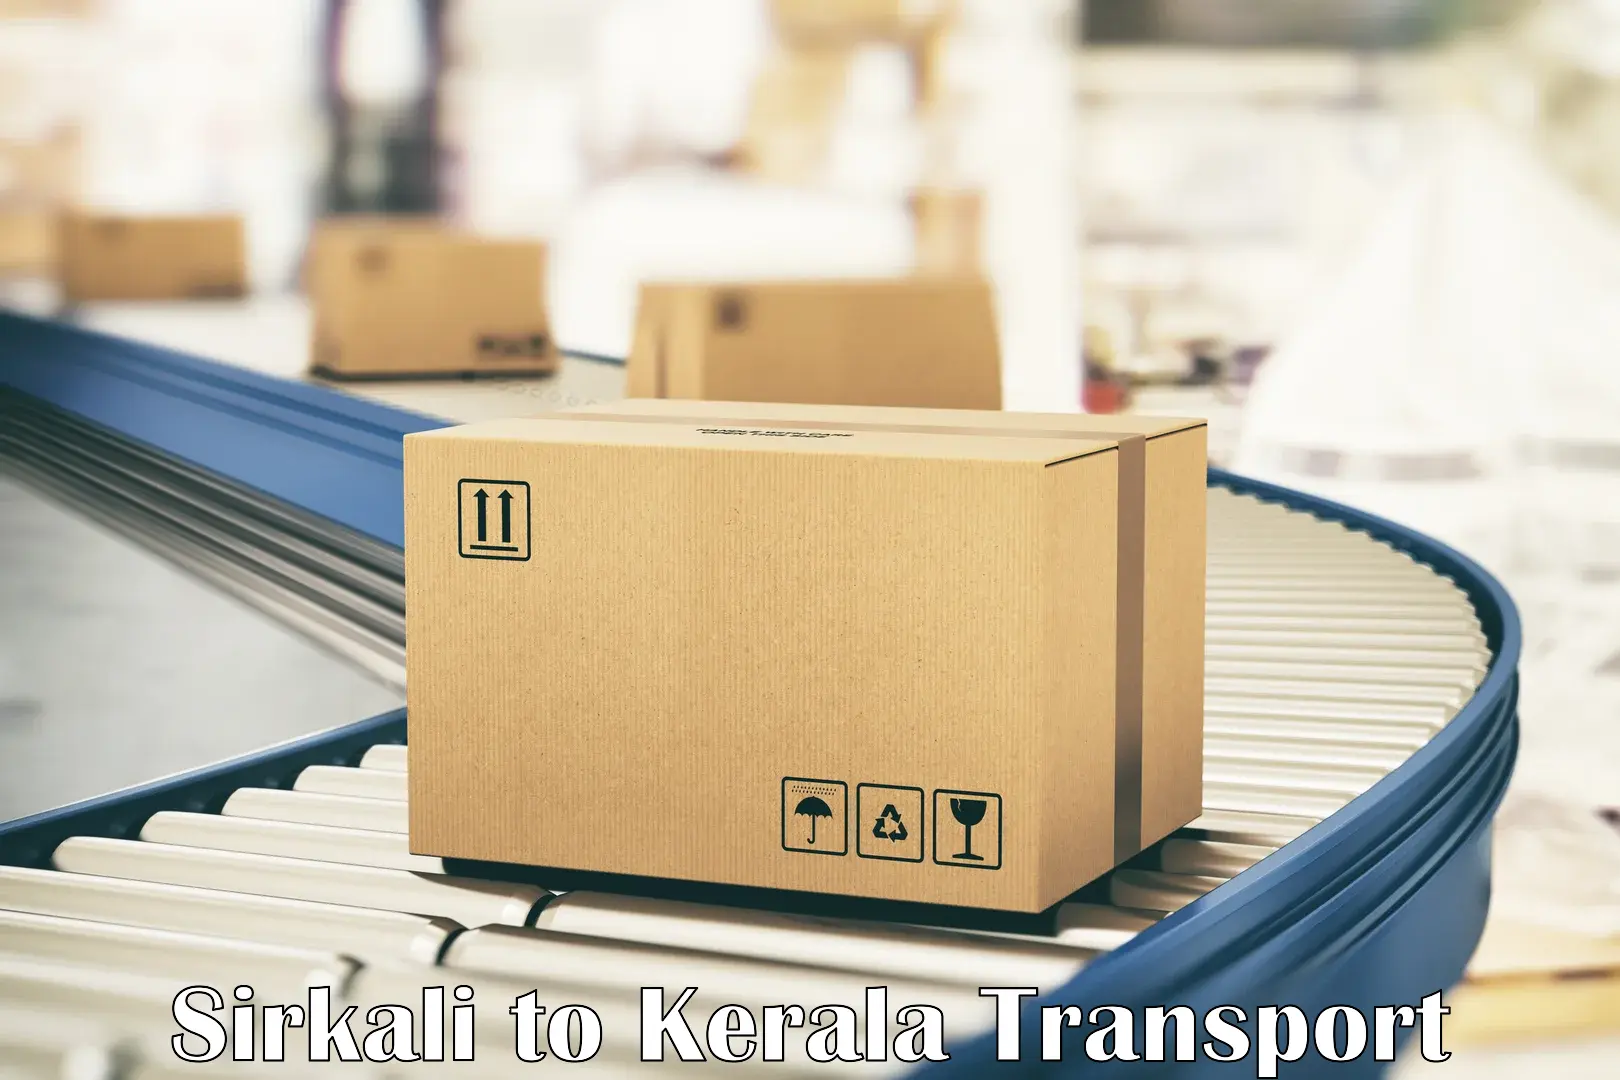 Daily parcel service transport in Sirkali to Wadakkanchery